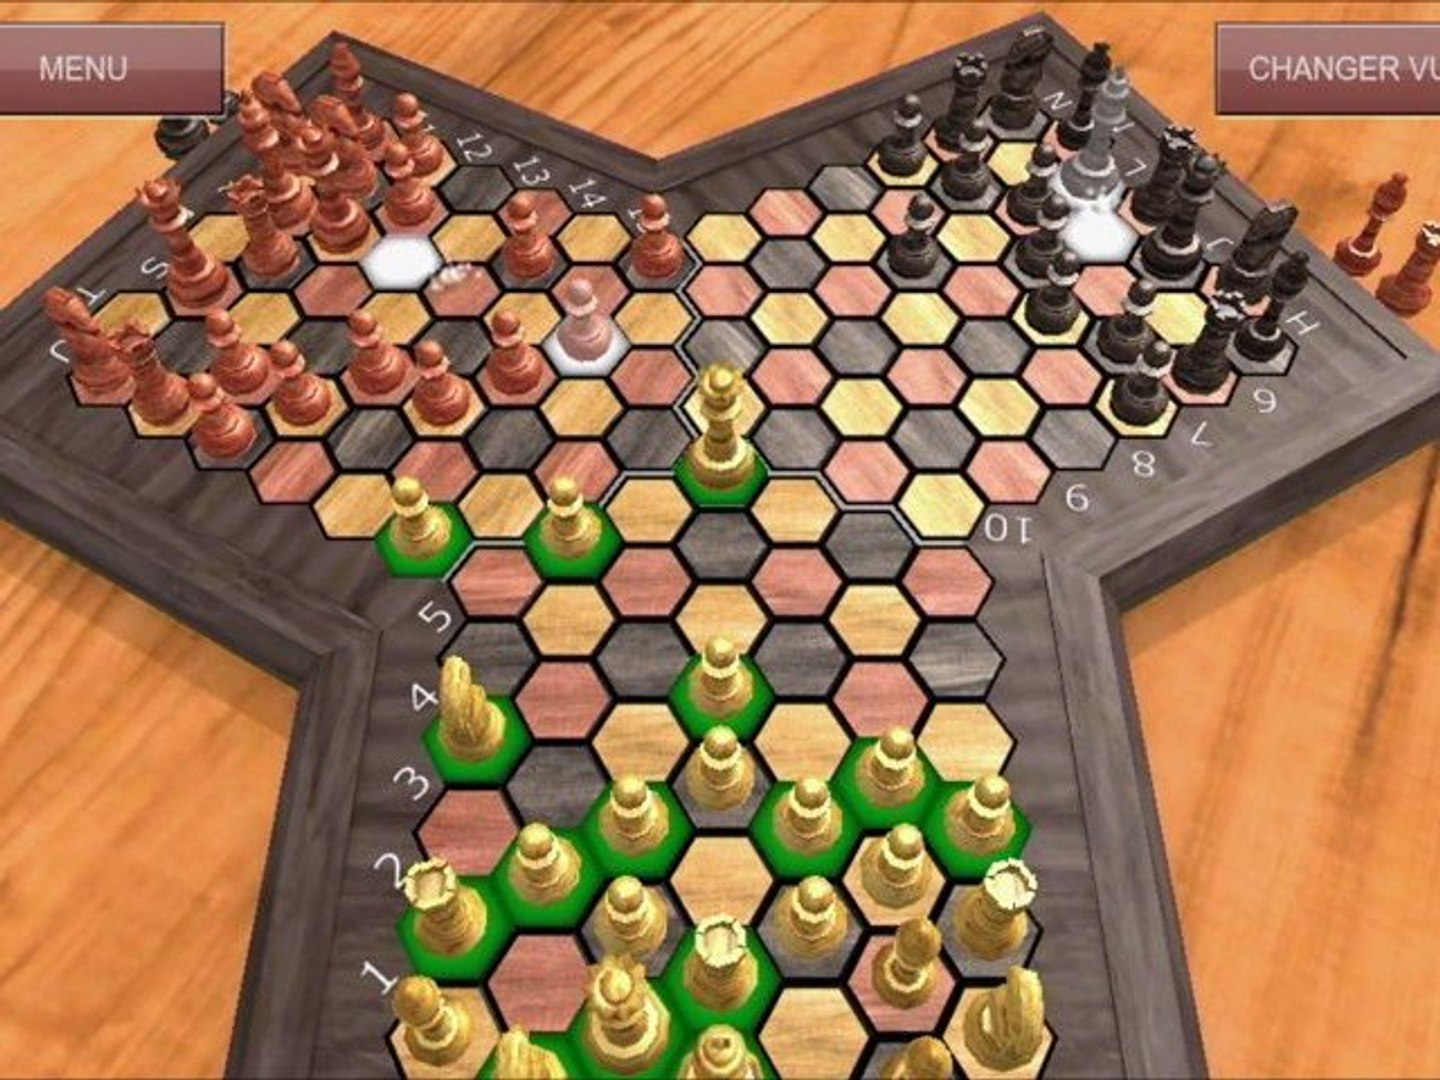 Triad-Chess : Démonstration du jeu d'échecs à trois joueurs - Triade Echecs  - Android App store appstore apple application game 3 players joueurs  chessboard échiquier - Vidéo Dailymotion